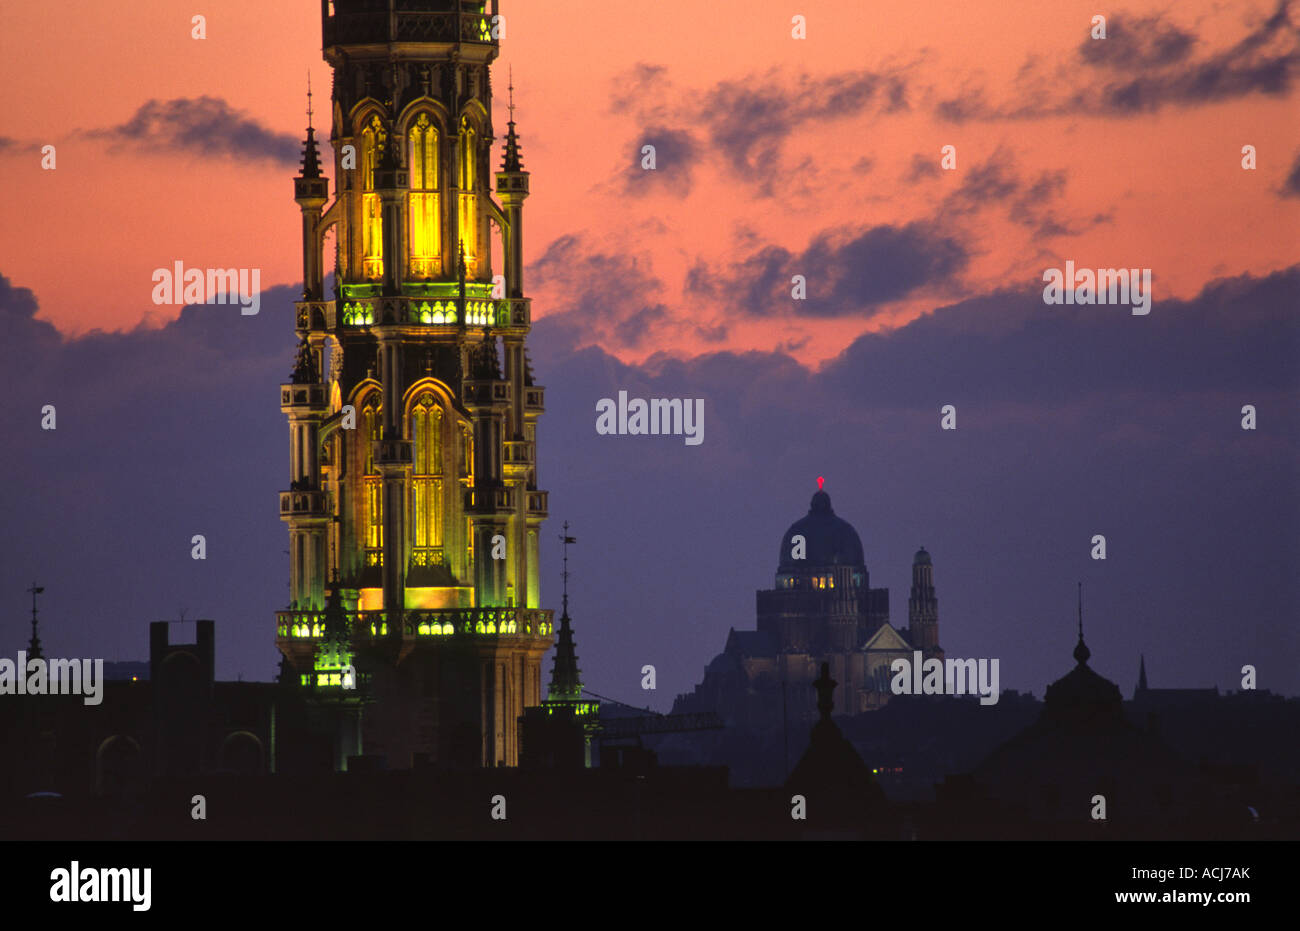 Die reich verzierten Turm von Brüssel Rathaus dominiert die Skyline in der Dämmerung. Brüssel, Belgien. Stockfoto